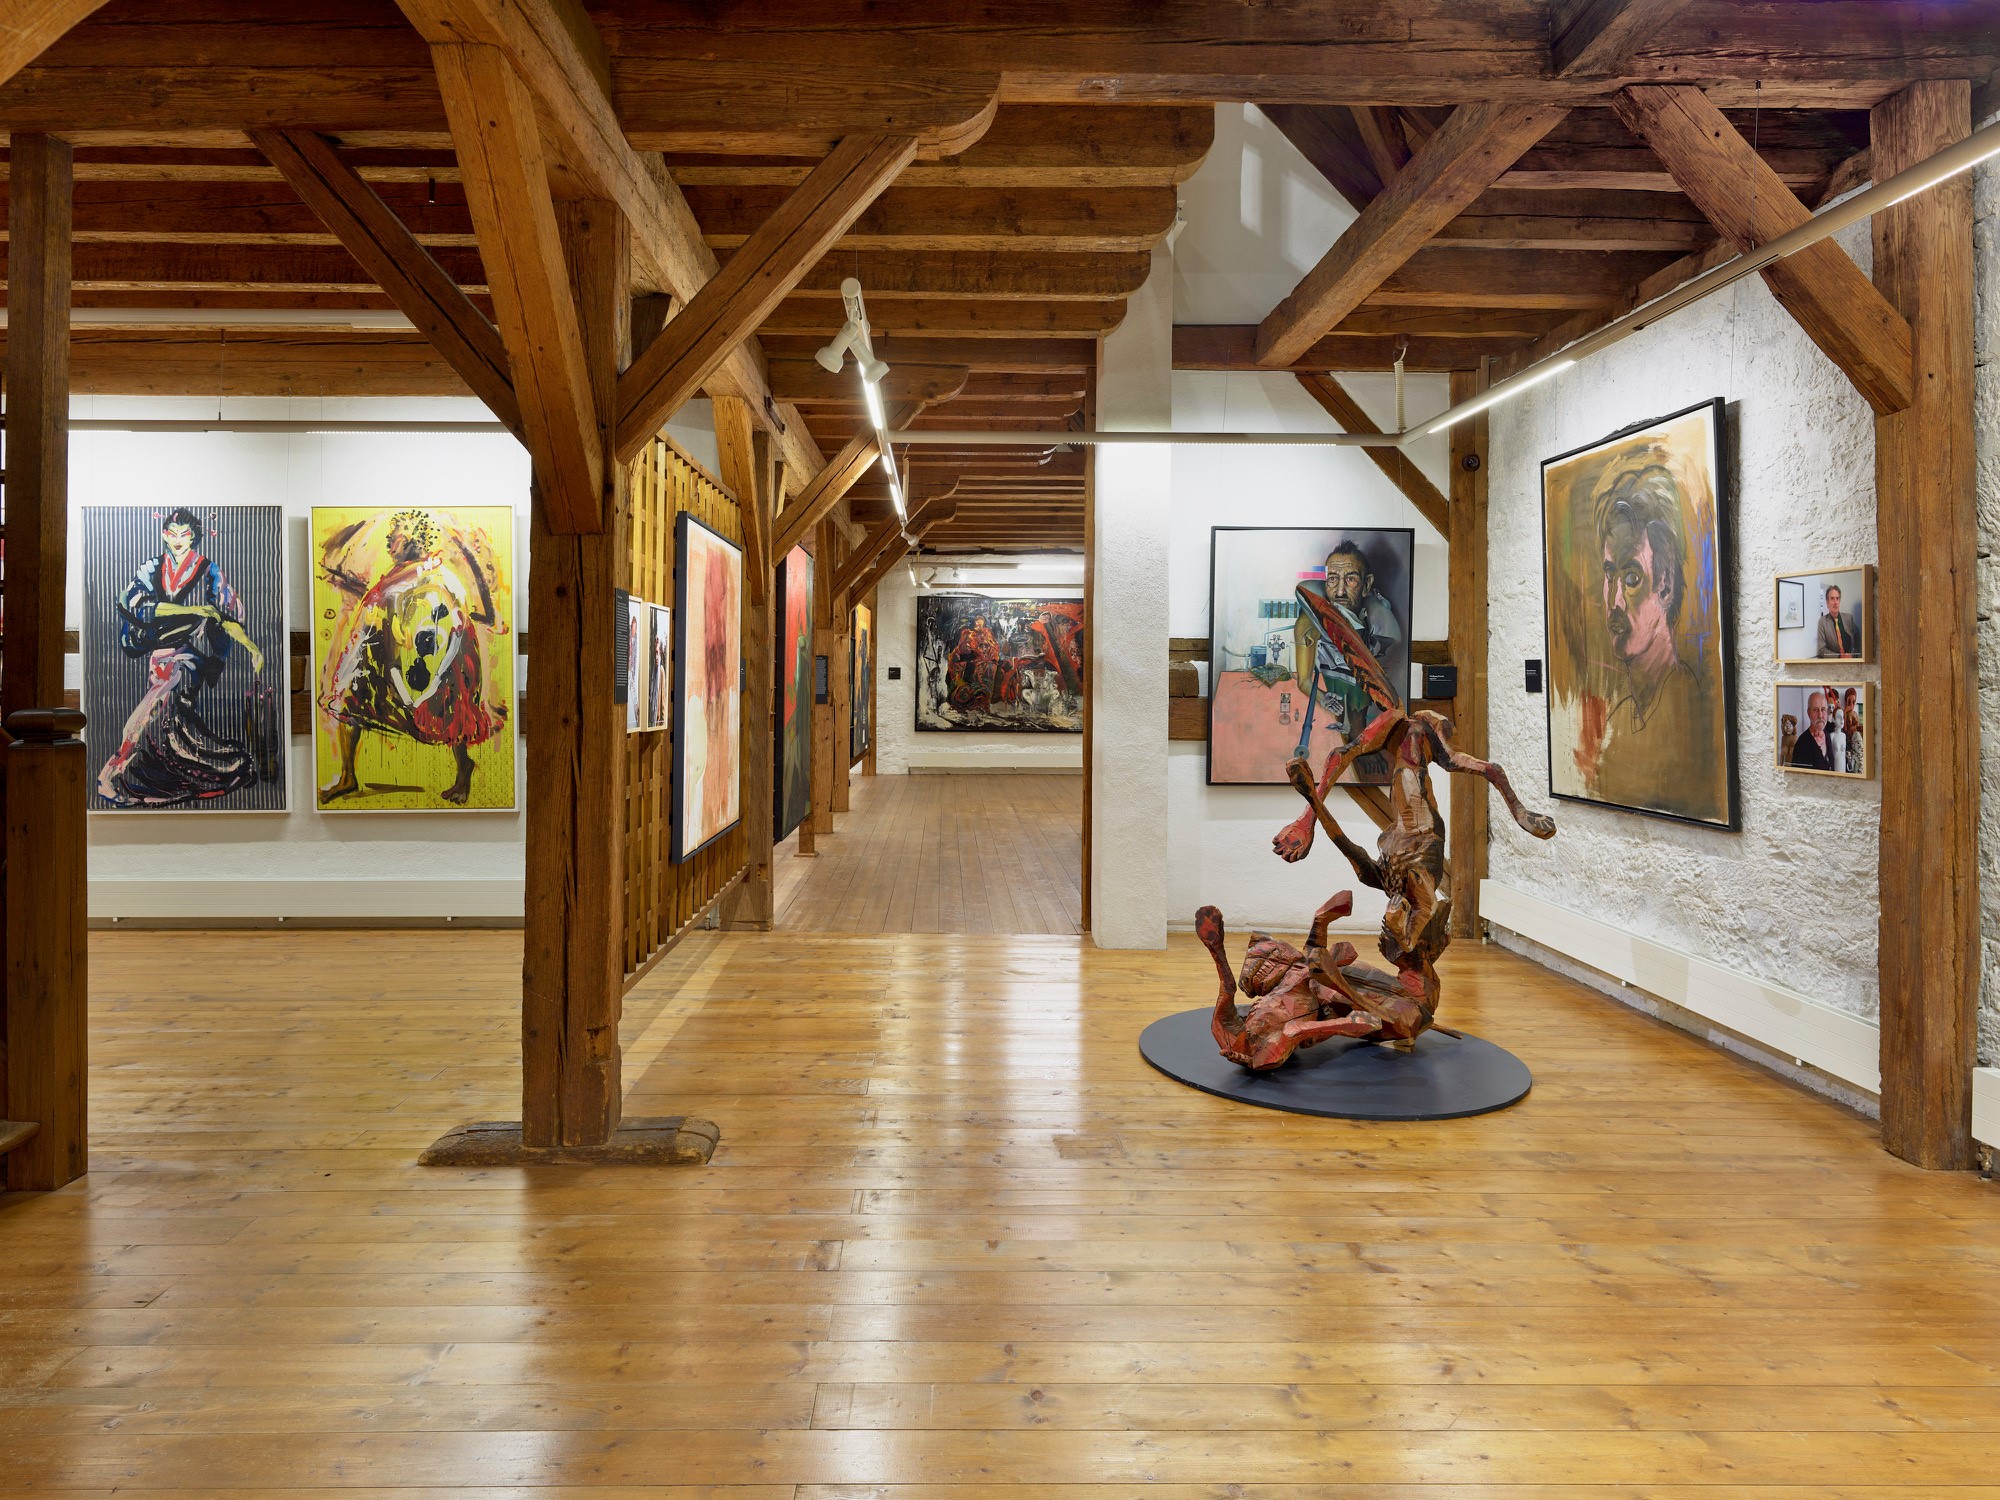 Blick in ein Museum mit großflächigen, farbenfrohen Malereien und einer Holzskulptur